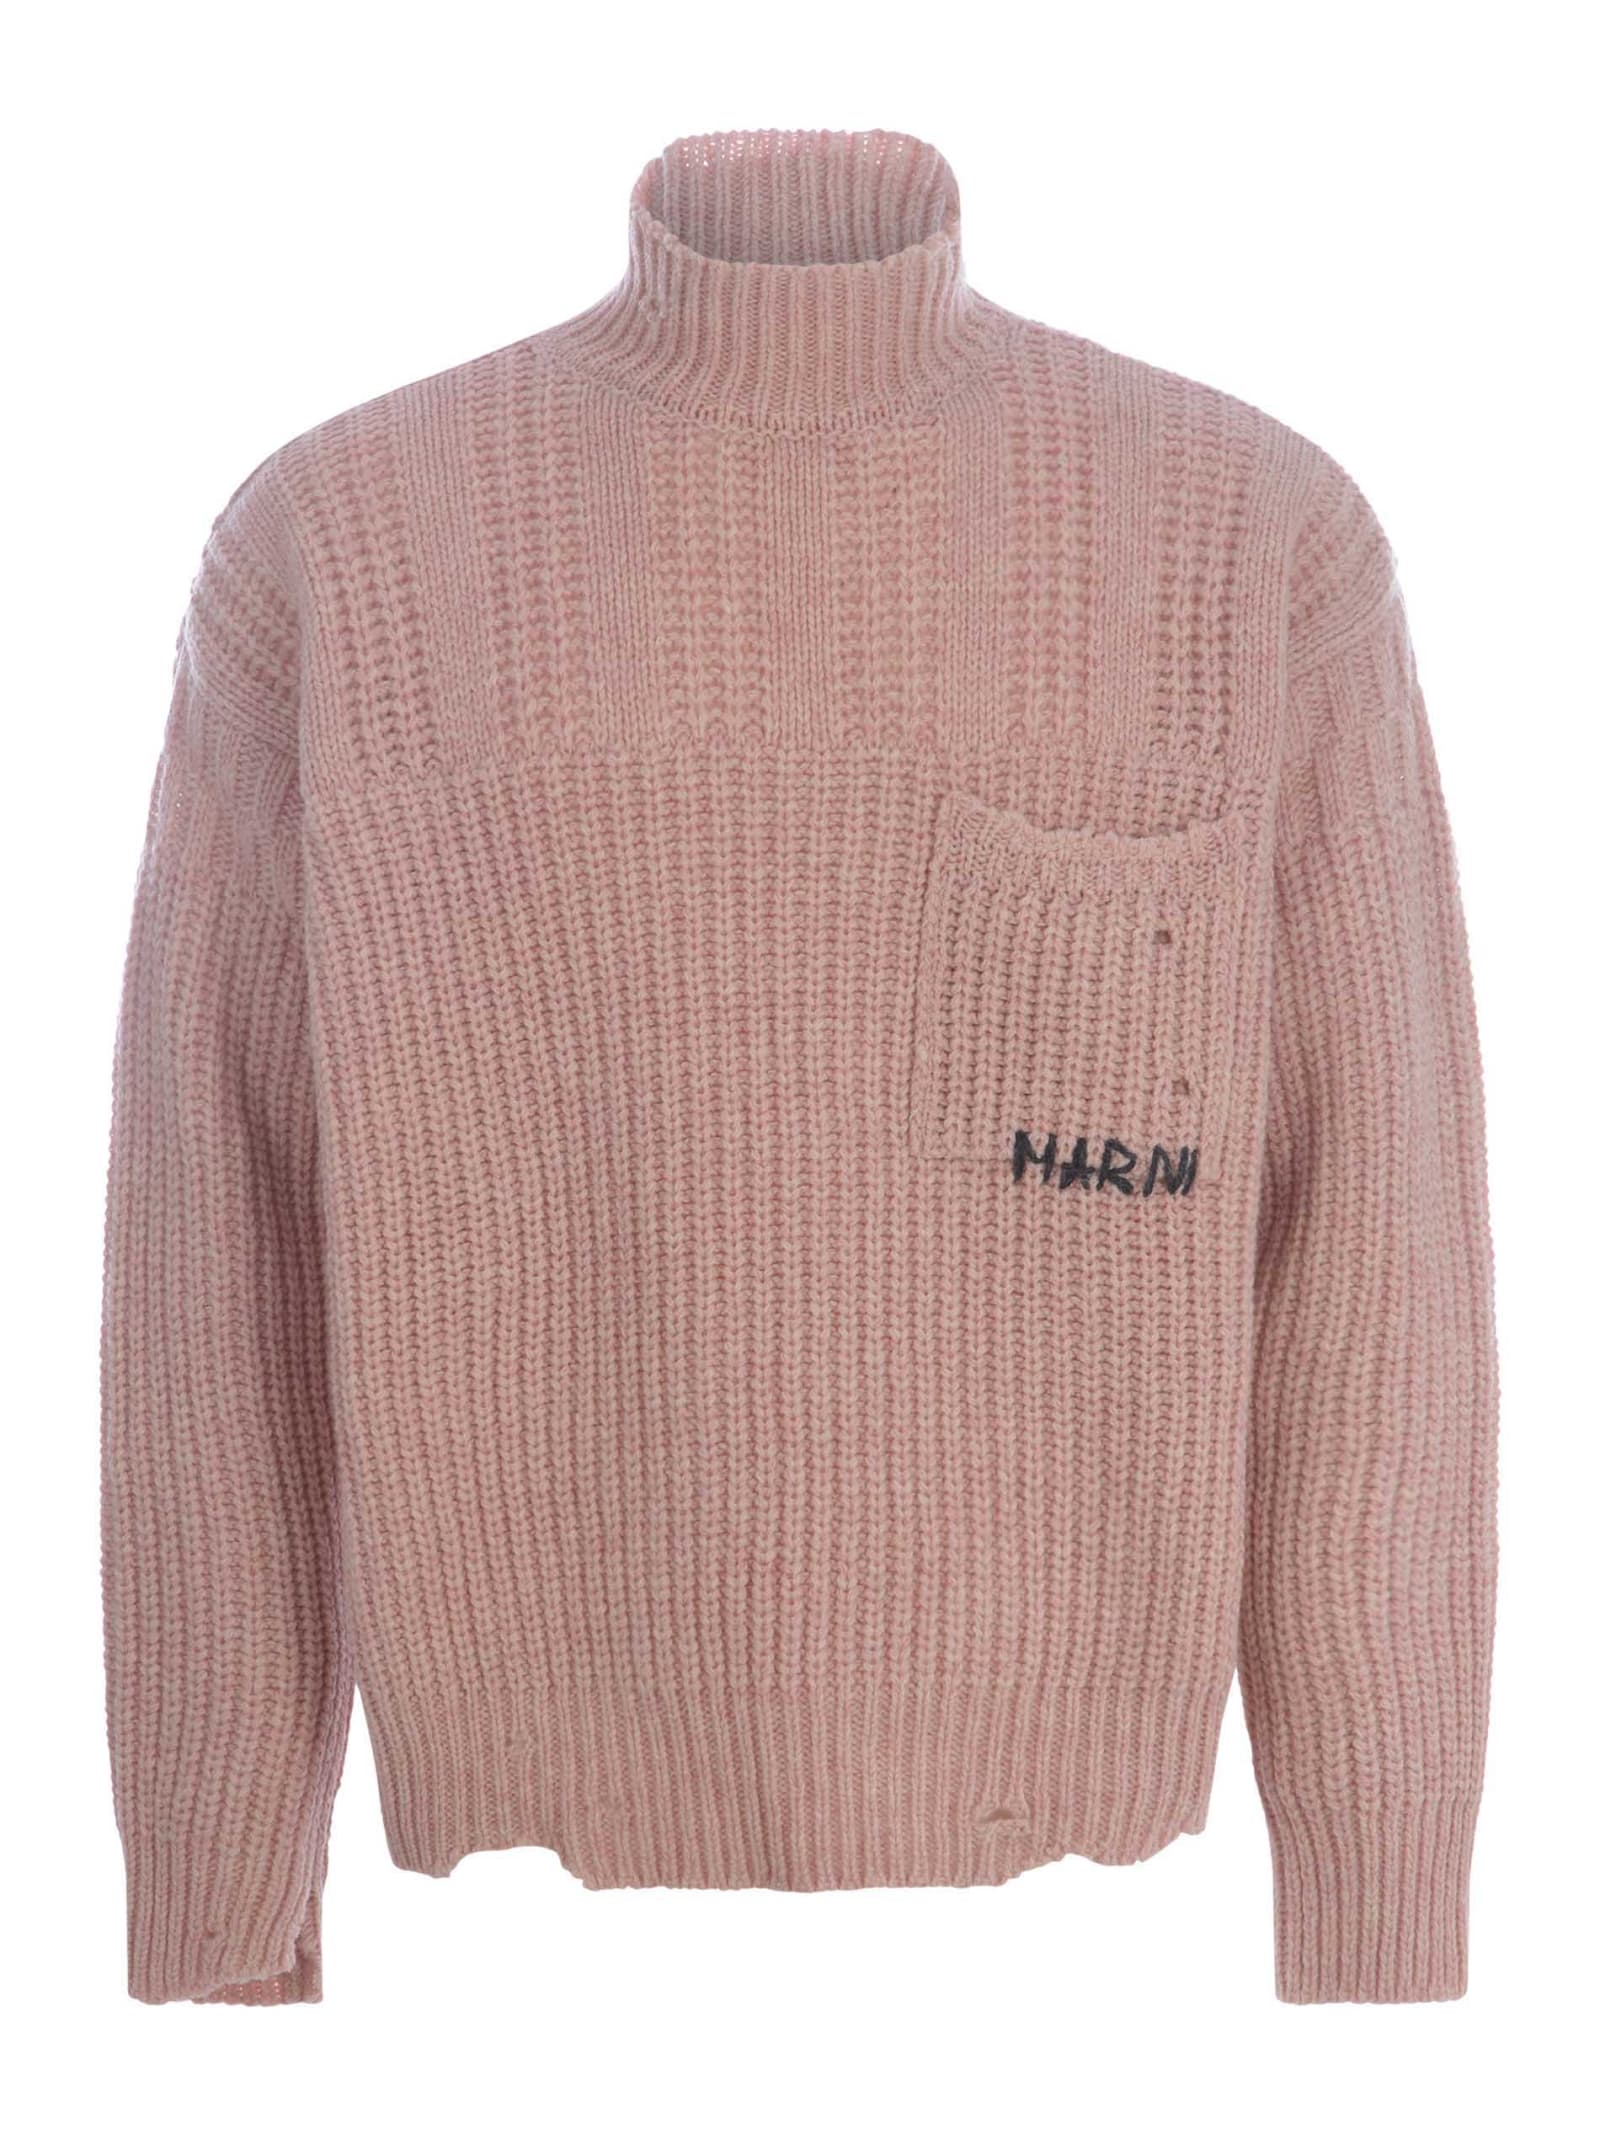 Marni Sweater  Made Of Virgin Wool In Pink